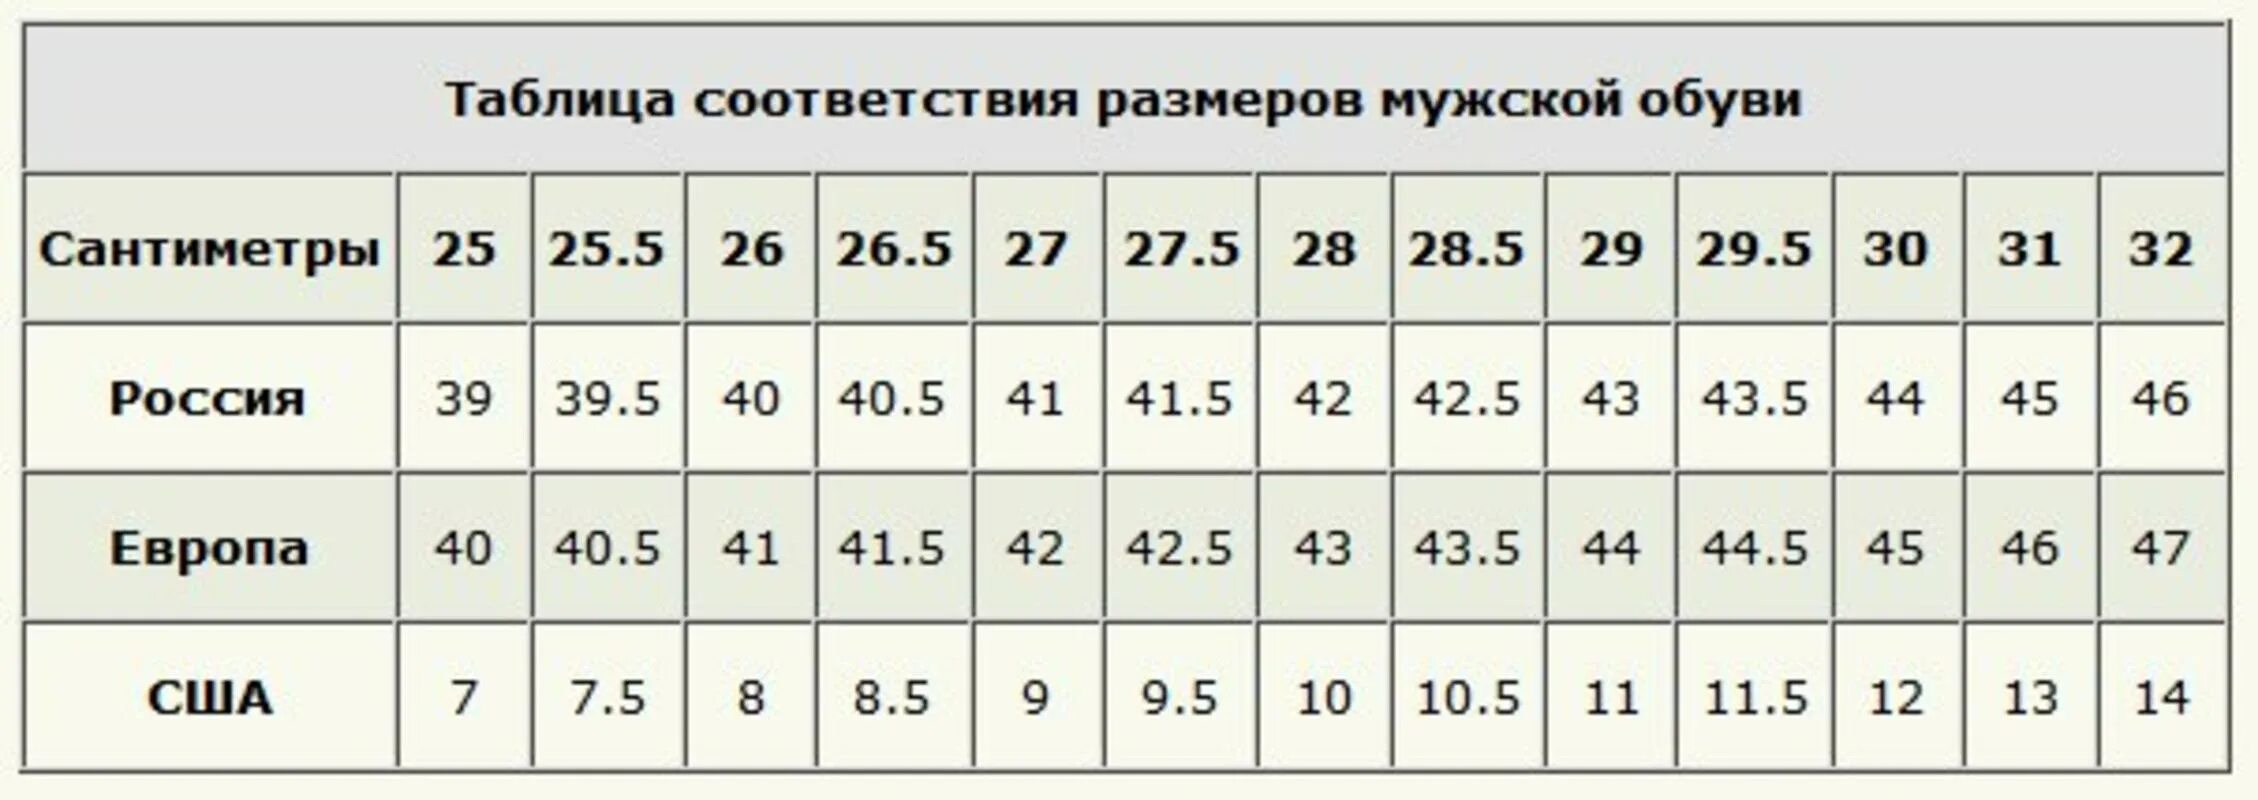 42 44 русский. 42 Русский размер обуви в см. Российский 40 размер обуви в см. 28 См российский размер обуви. Европейский размер обуви мужской 43.